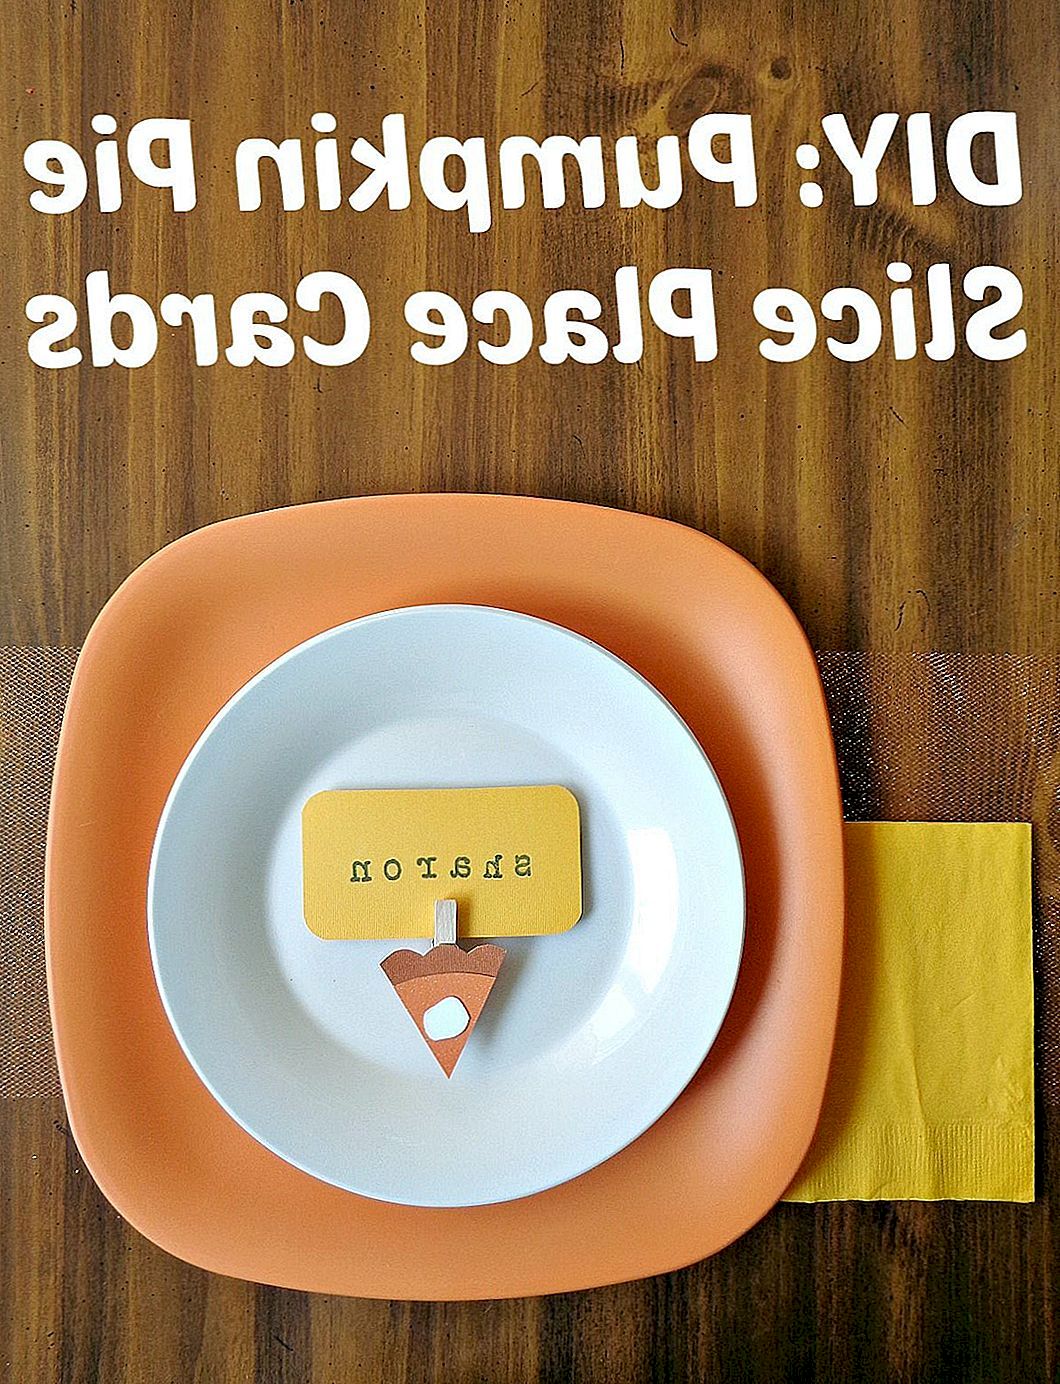 DIY Pumpkin Pie Slice Place Cards